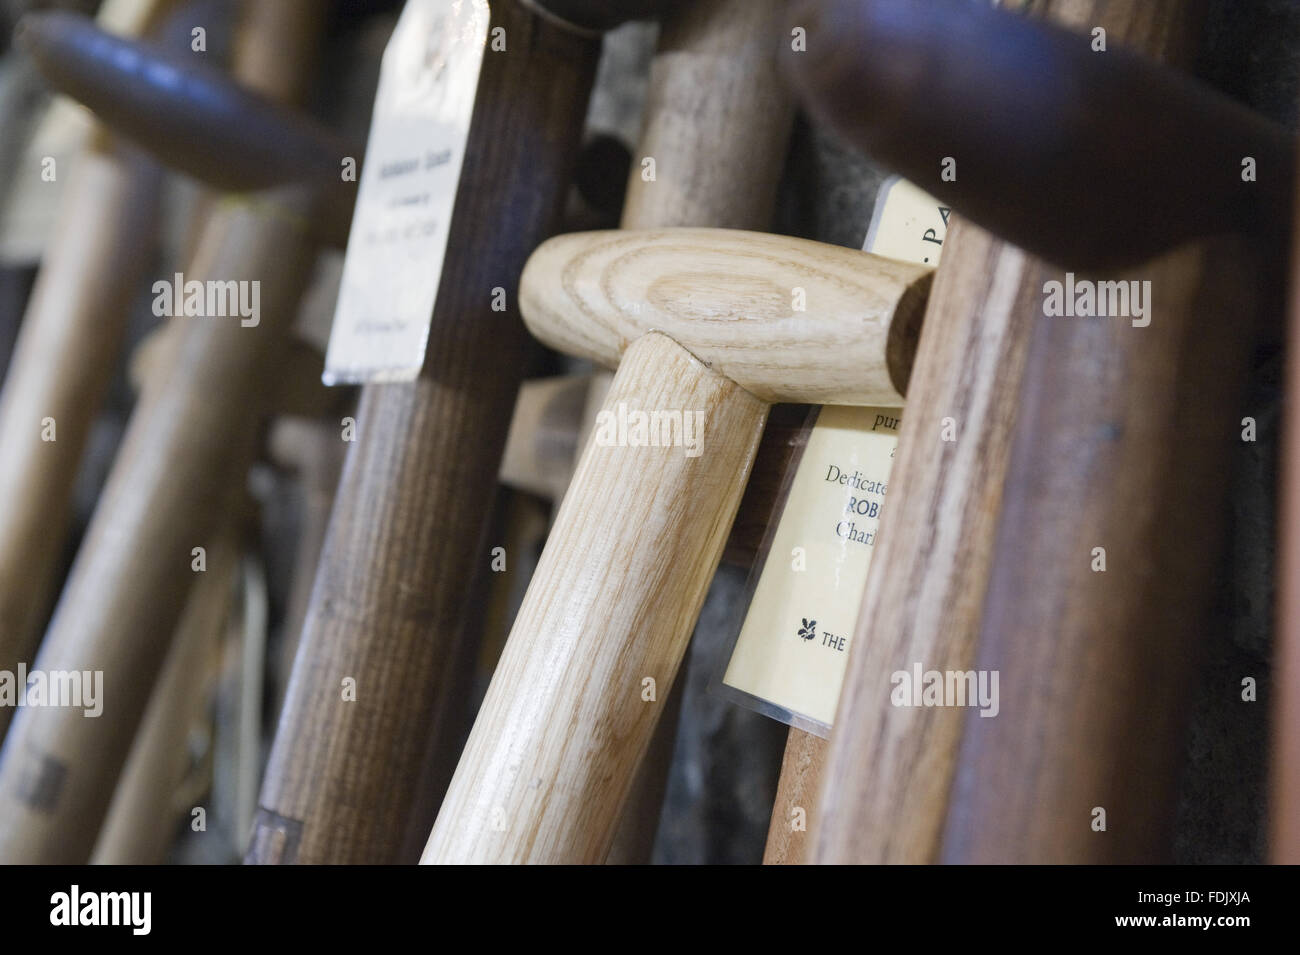 Empuñaduras de espada de madera en Patterson's Spade Mill Co. de Antrim, Irlanda del Norte. El molino de Templepatrick es el último trabajo de agua impulsada Spade Mill en el uso diario en las Islas Británicas. Foto de stock